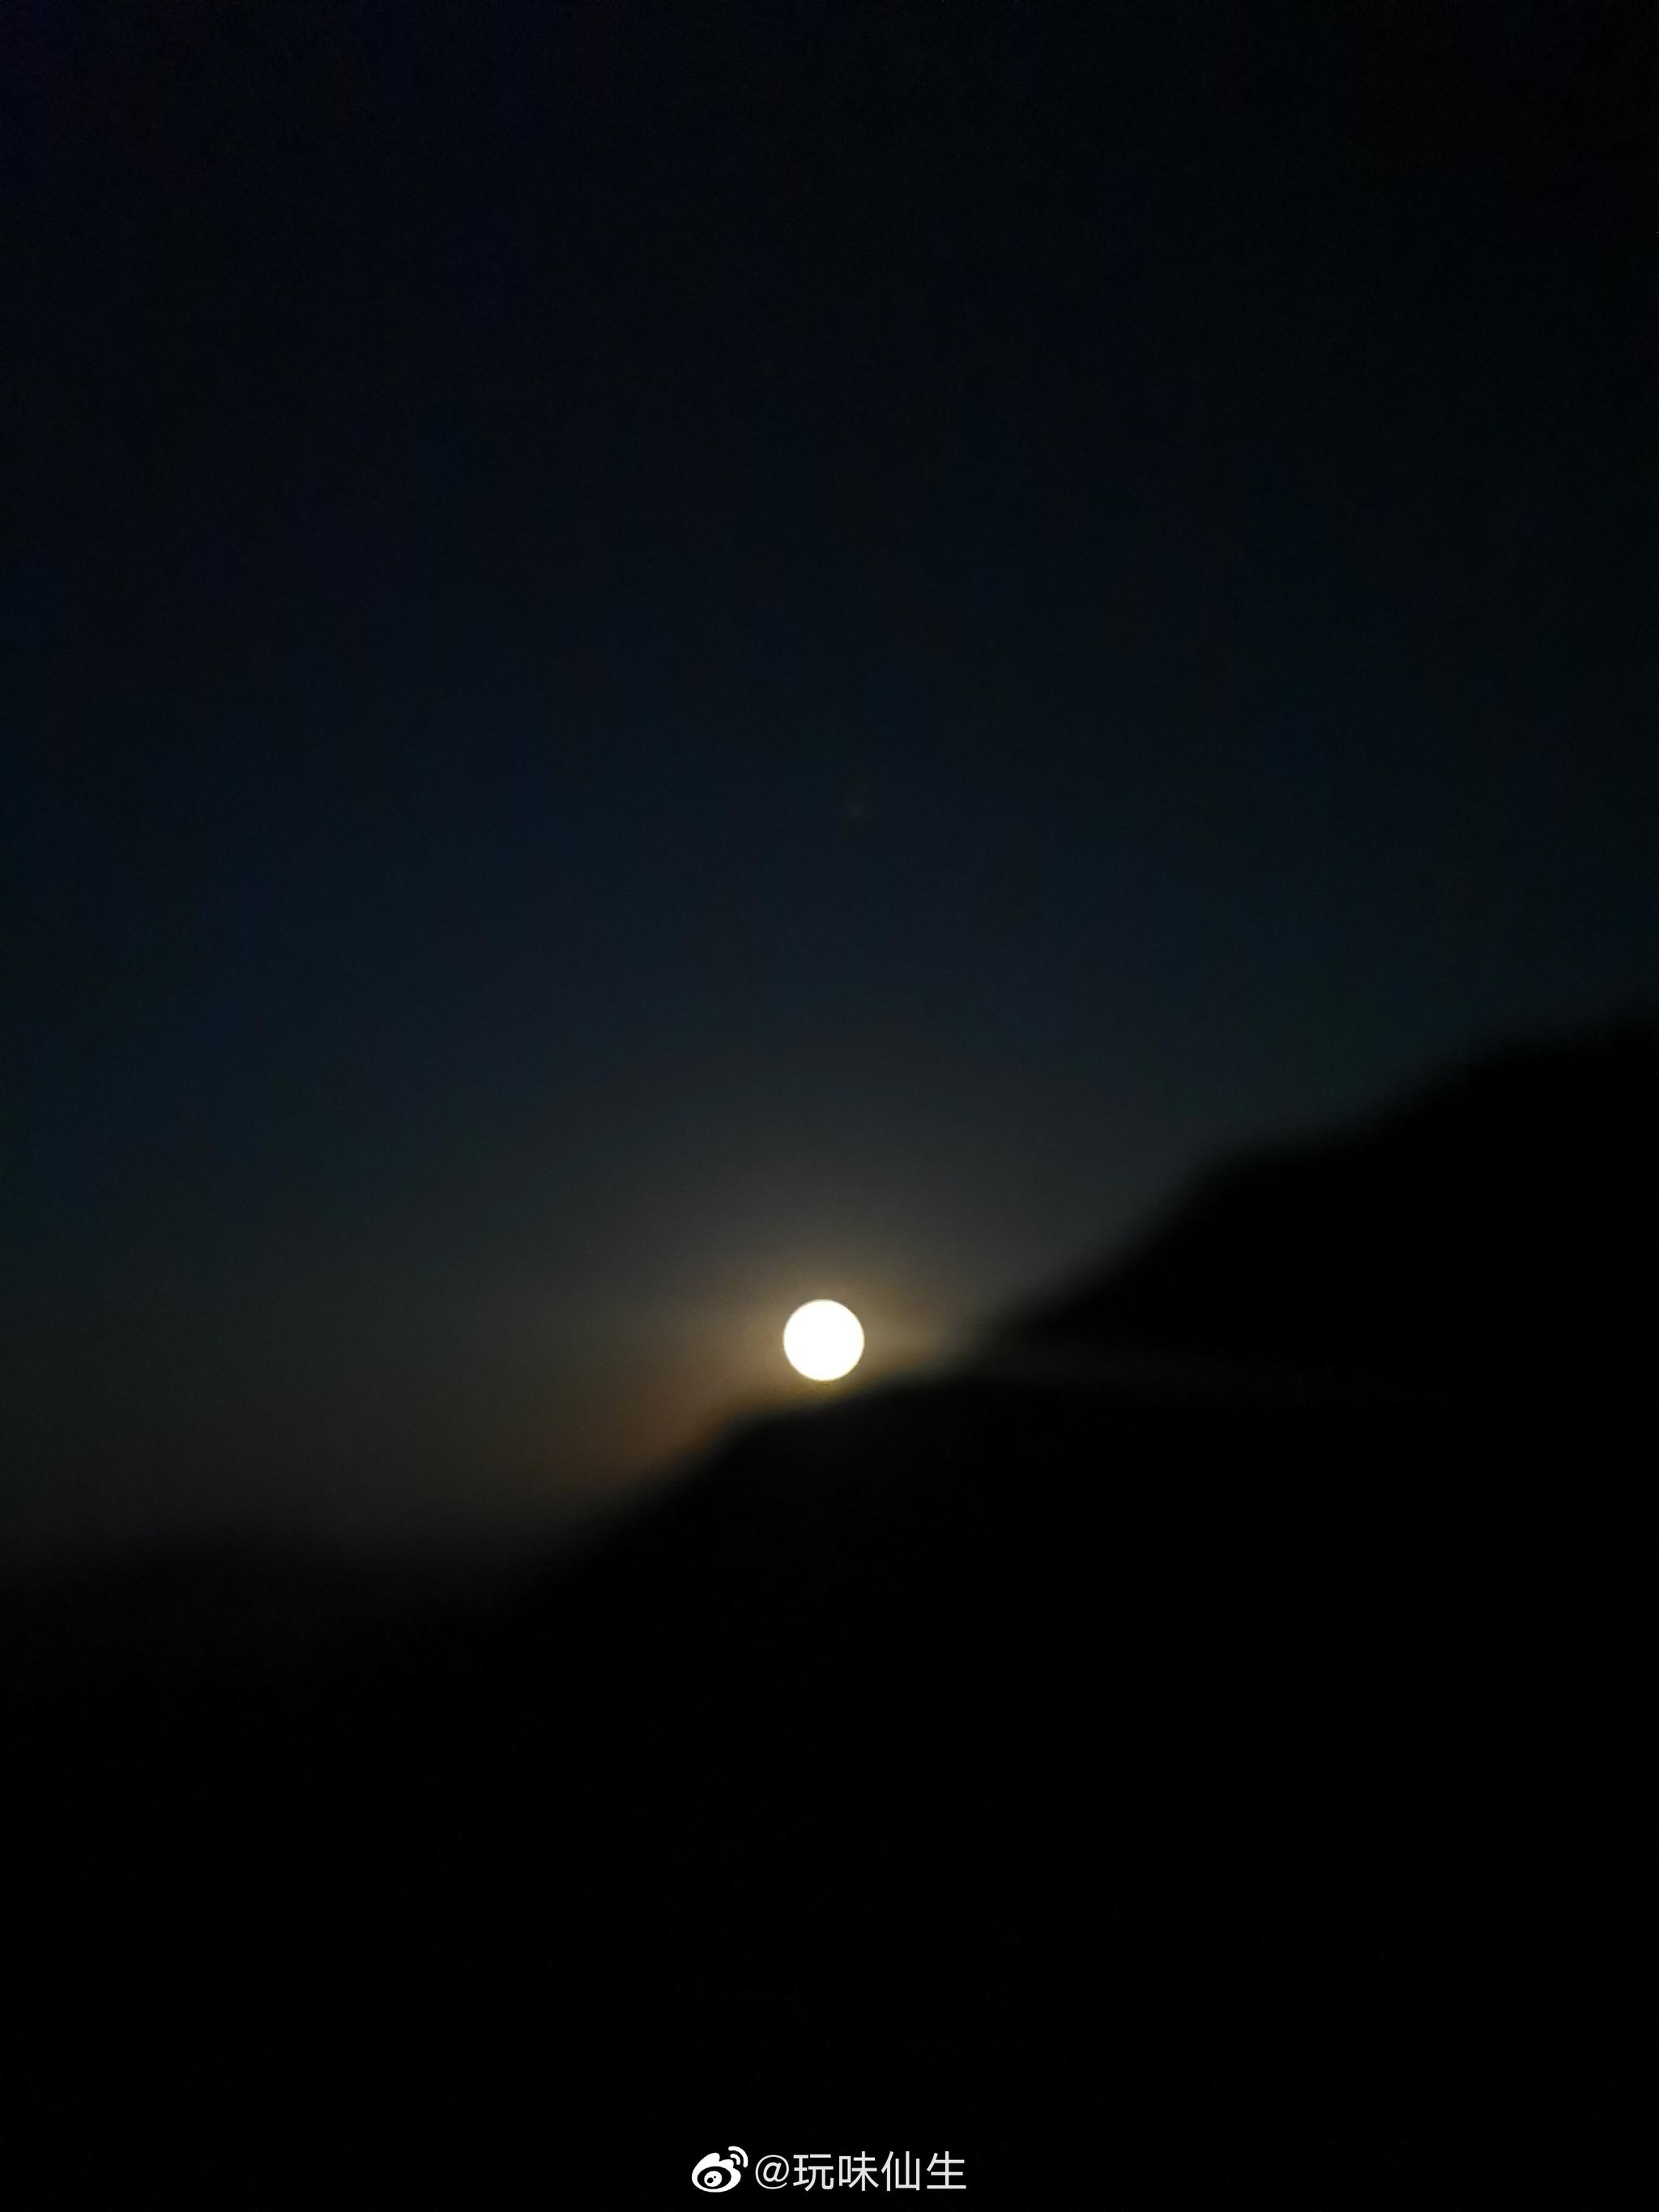 守到凌晨三点多拍下的,月亮"下山"的那一刻!@重庆同城